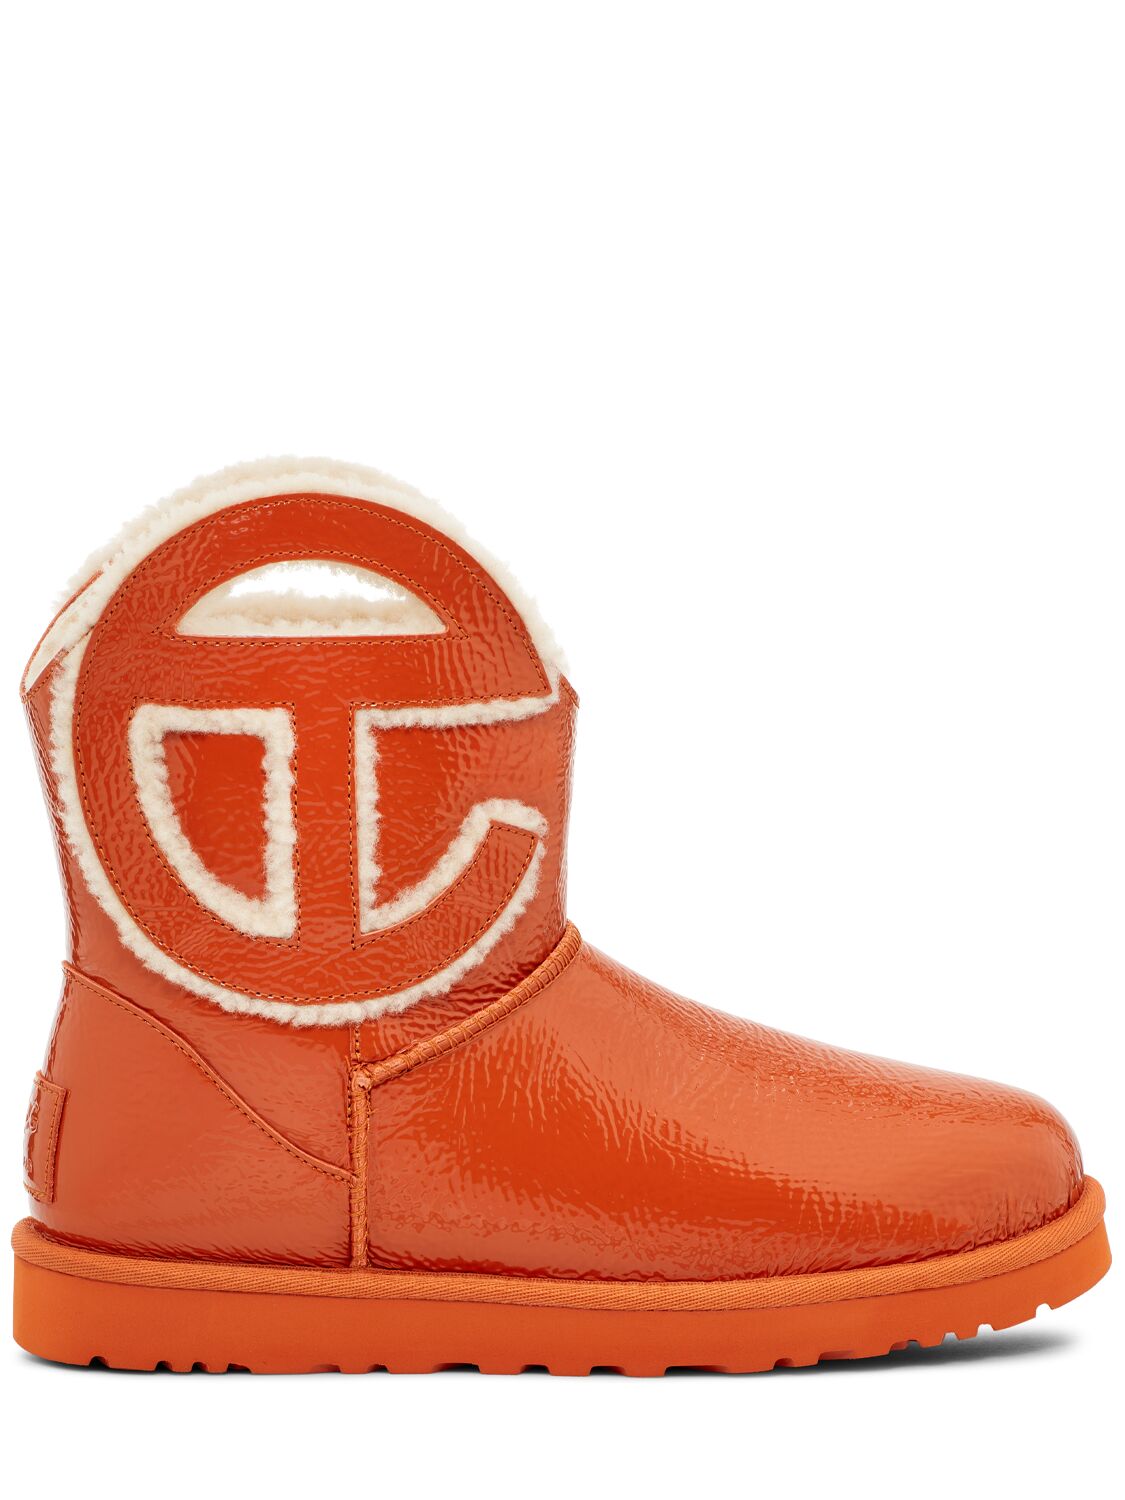 Ugg X Telfar 10毫米telfar迷你褶皱漆皮靴子 In Spicy Pumpkin